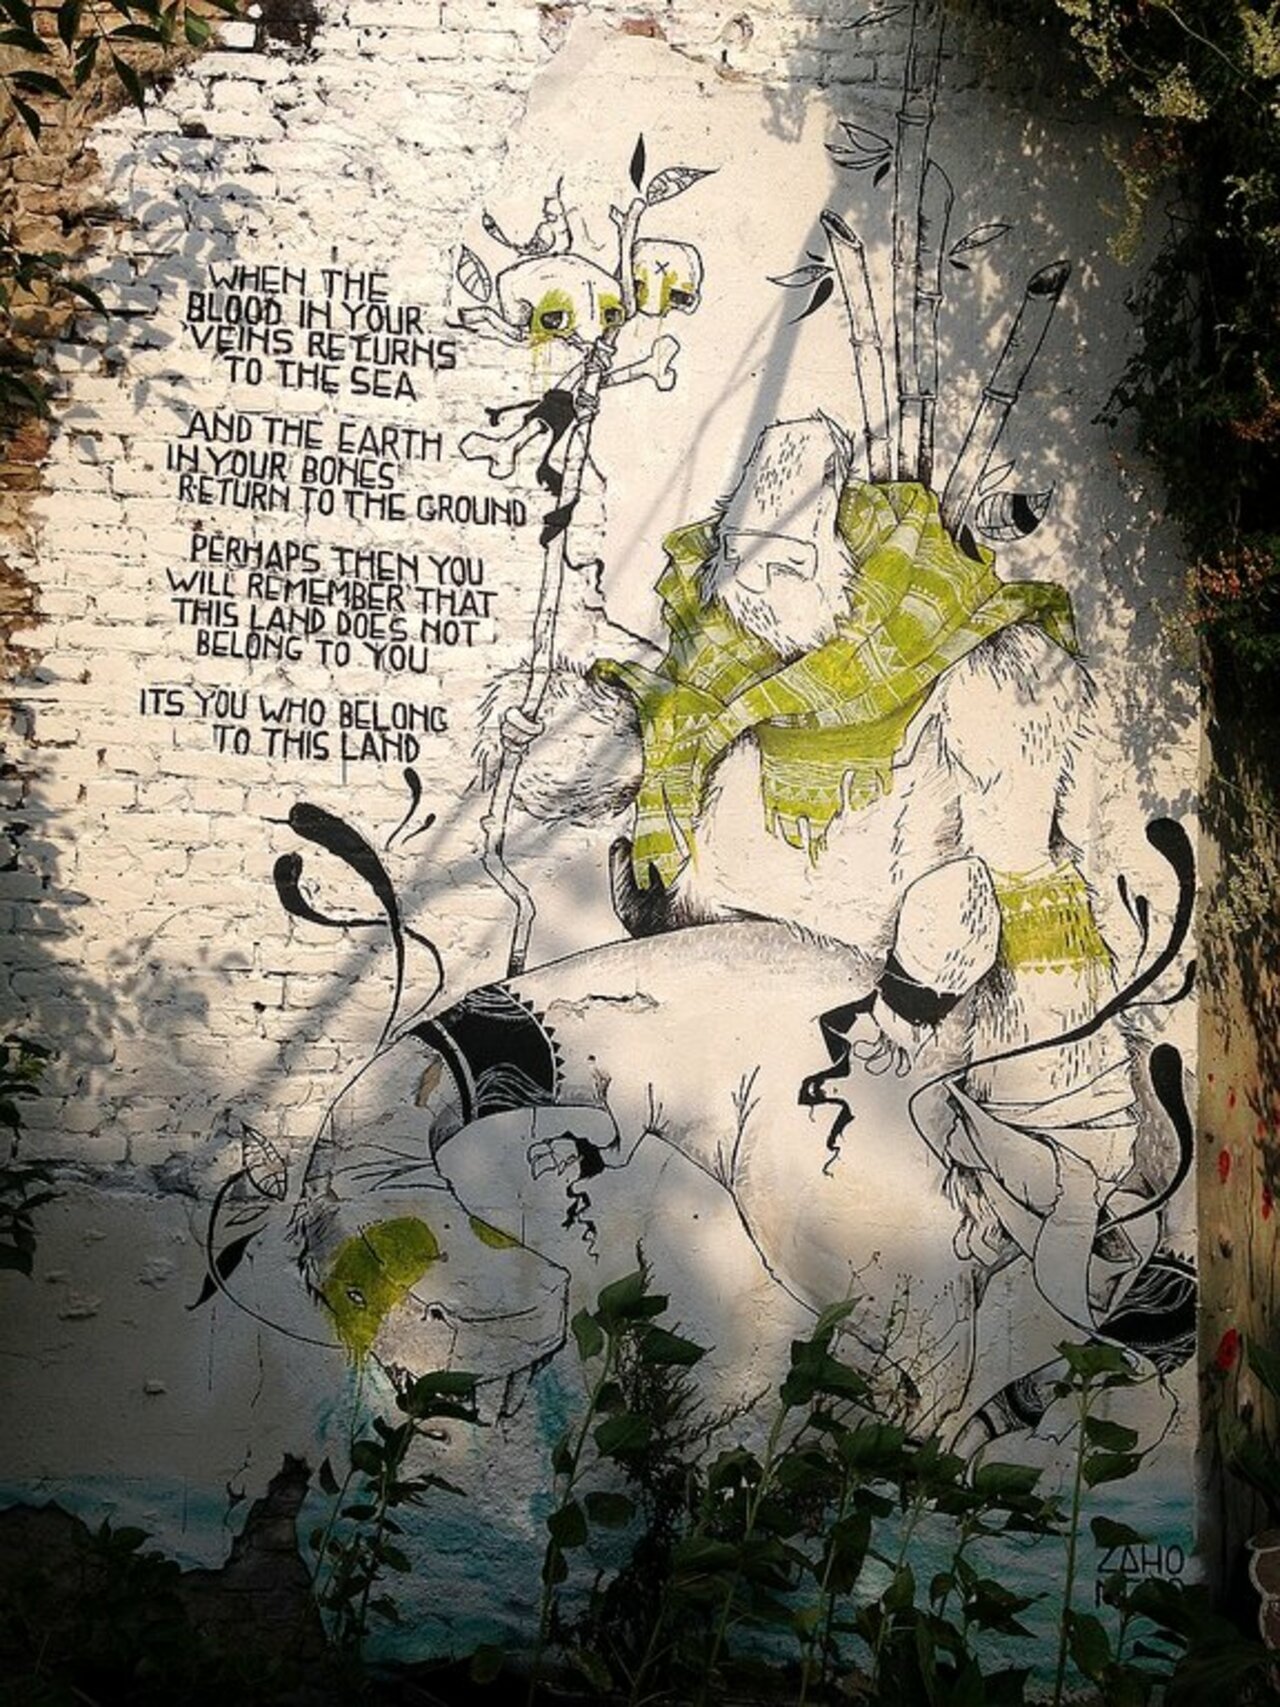 Street Art by Zaho Nero in #Berlin http://www.urbacolors.com #art #mural #graffiti #streetart https://t.co/jdyMRbao0u